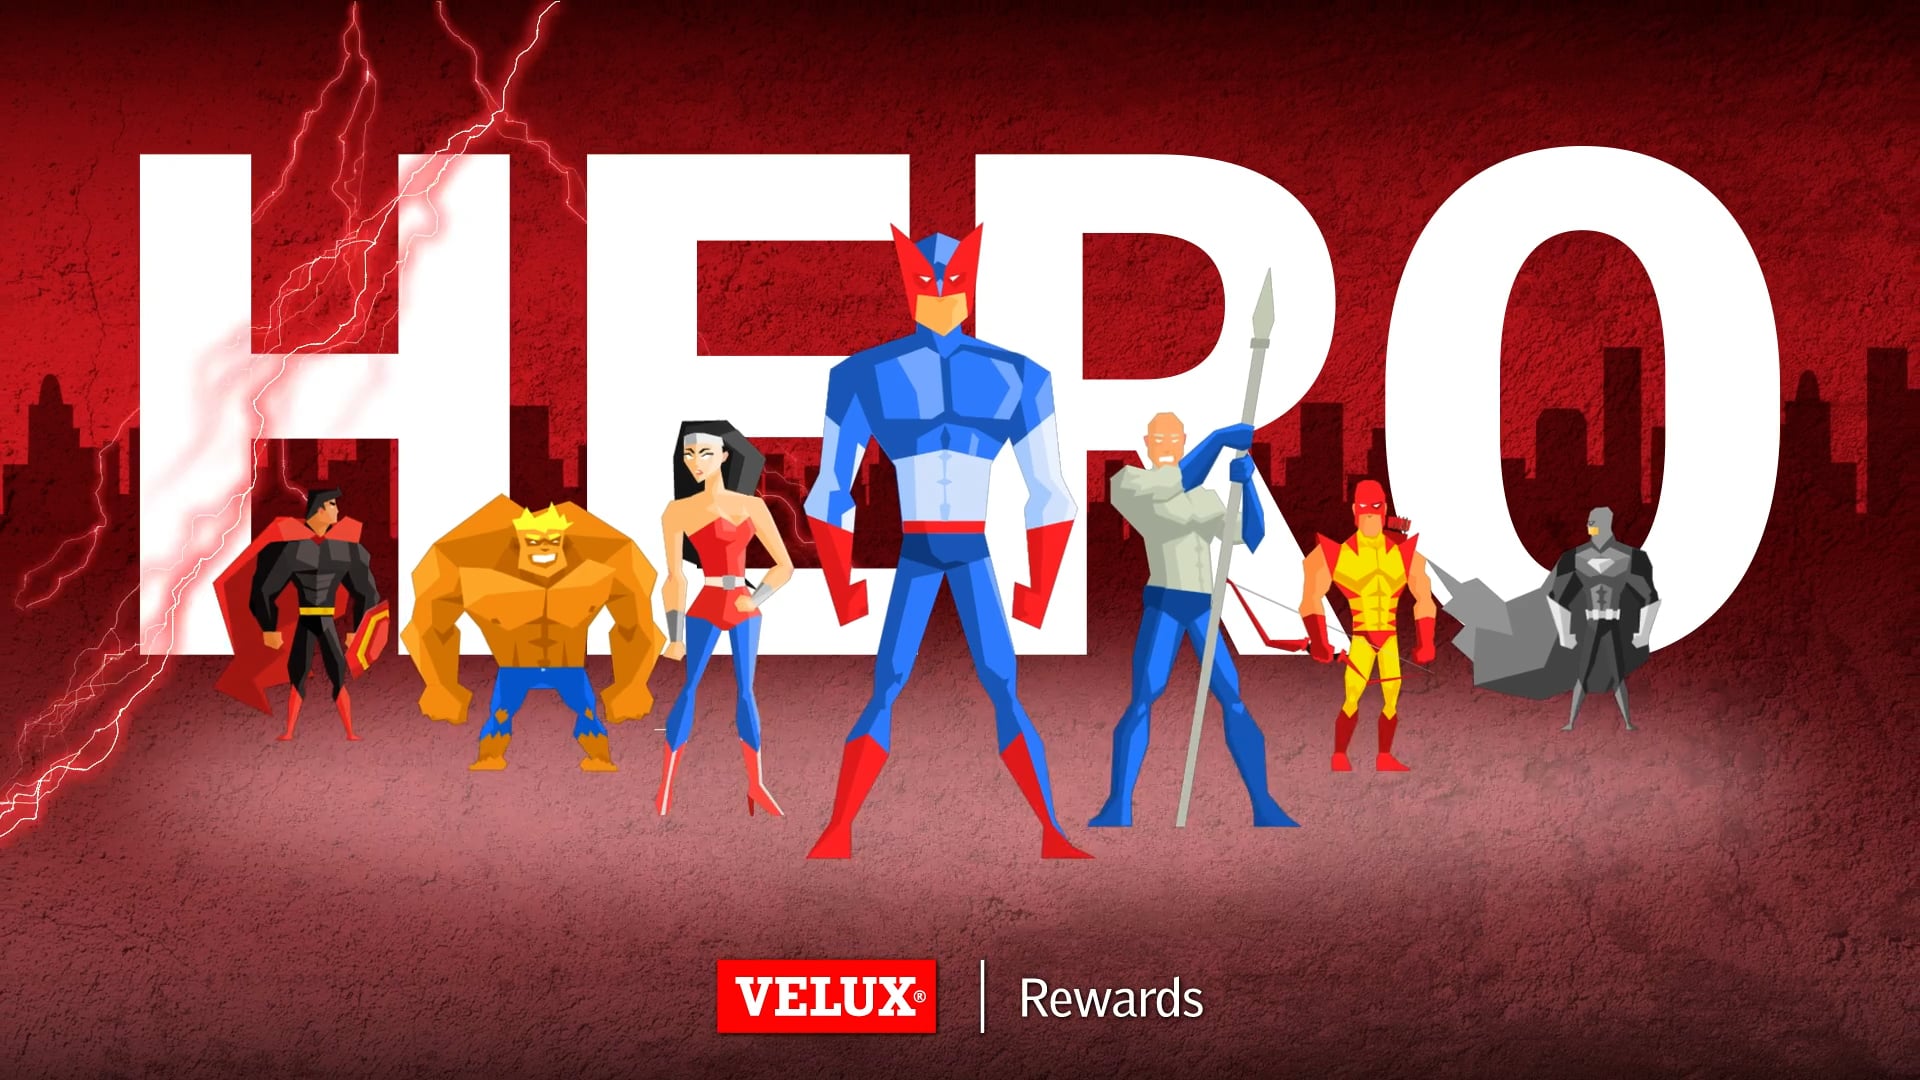 Velux | Rewards Super Heroes Promotion